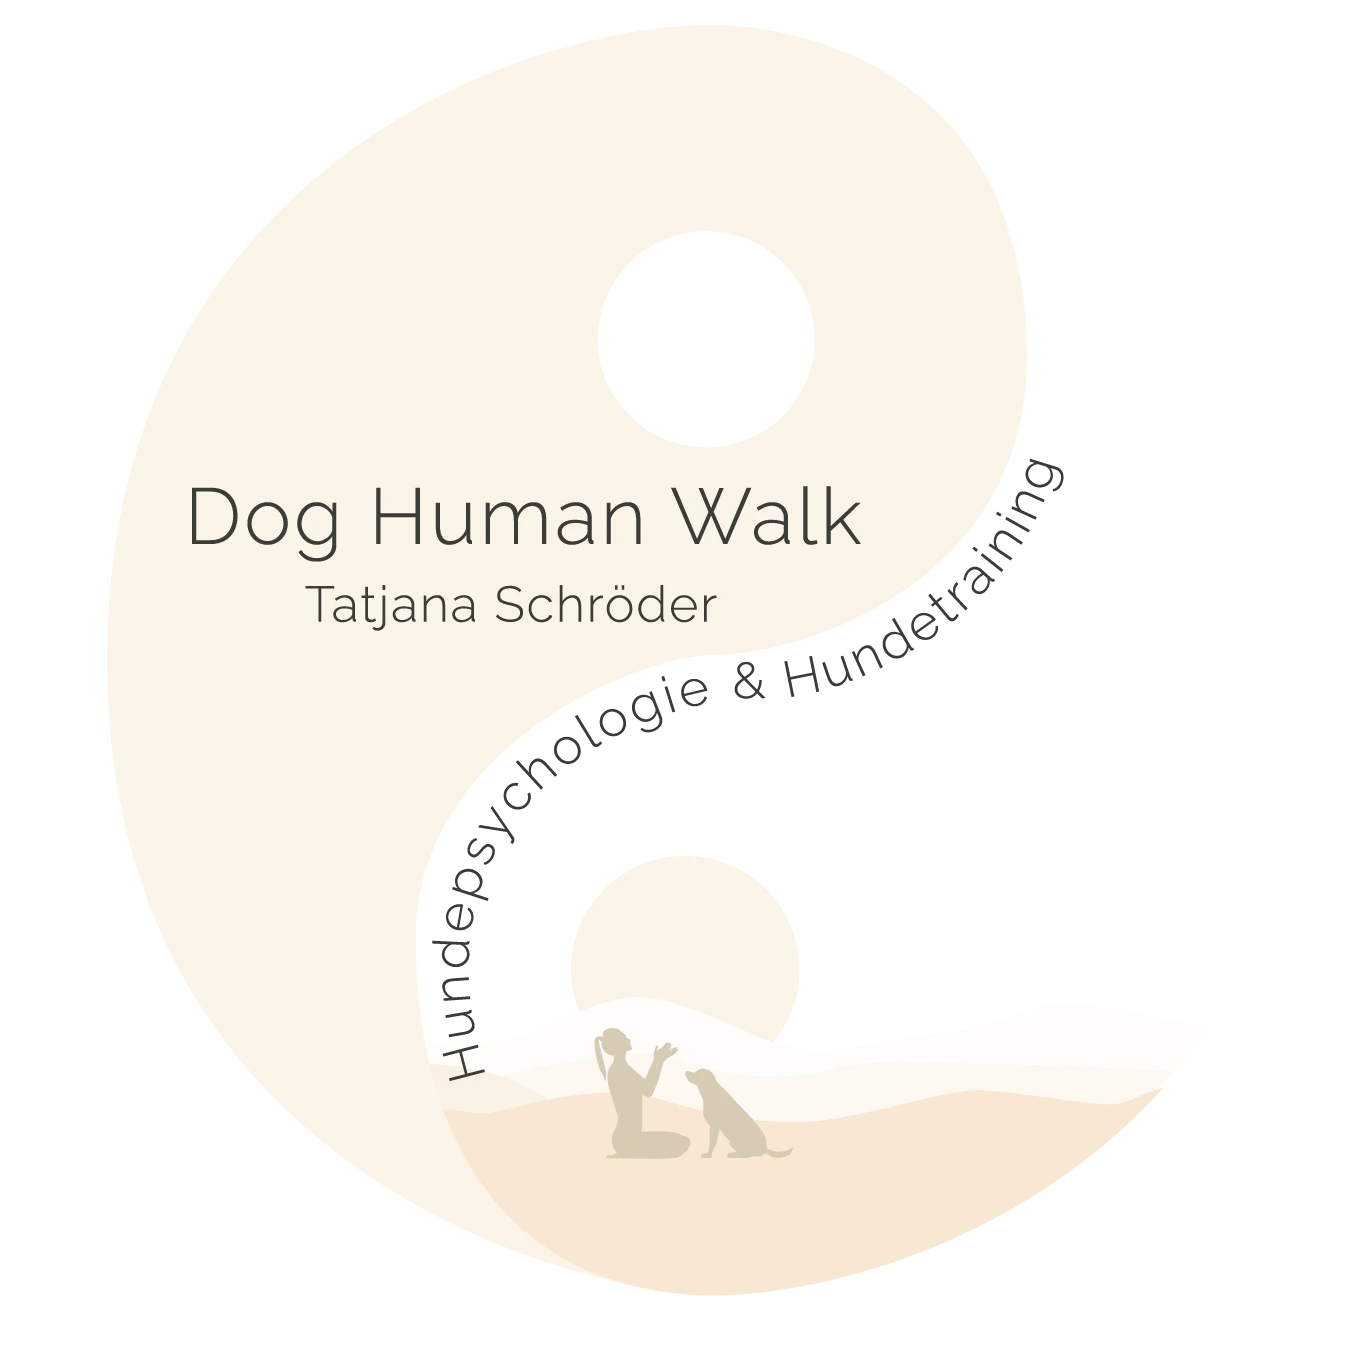 Dog Human Walk Hundeschule Hundepsychologe Hundetraining Bitburg Trier Wittlich Hundebegegnung